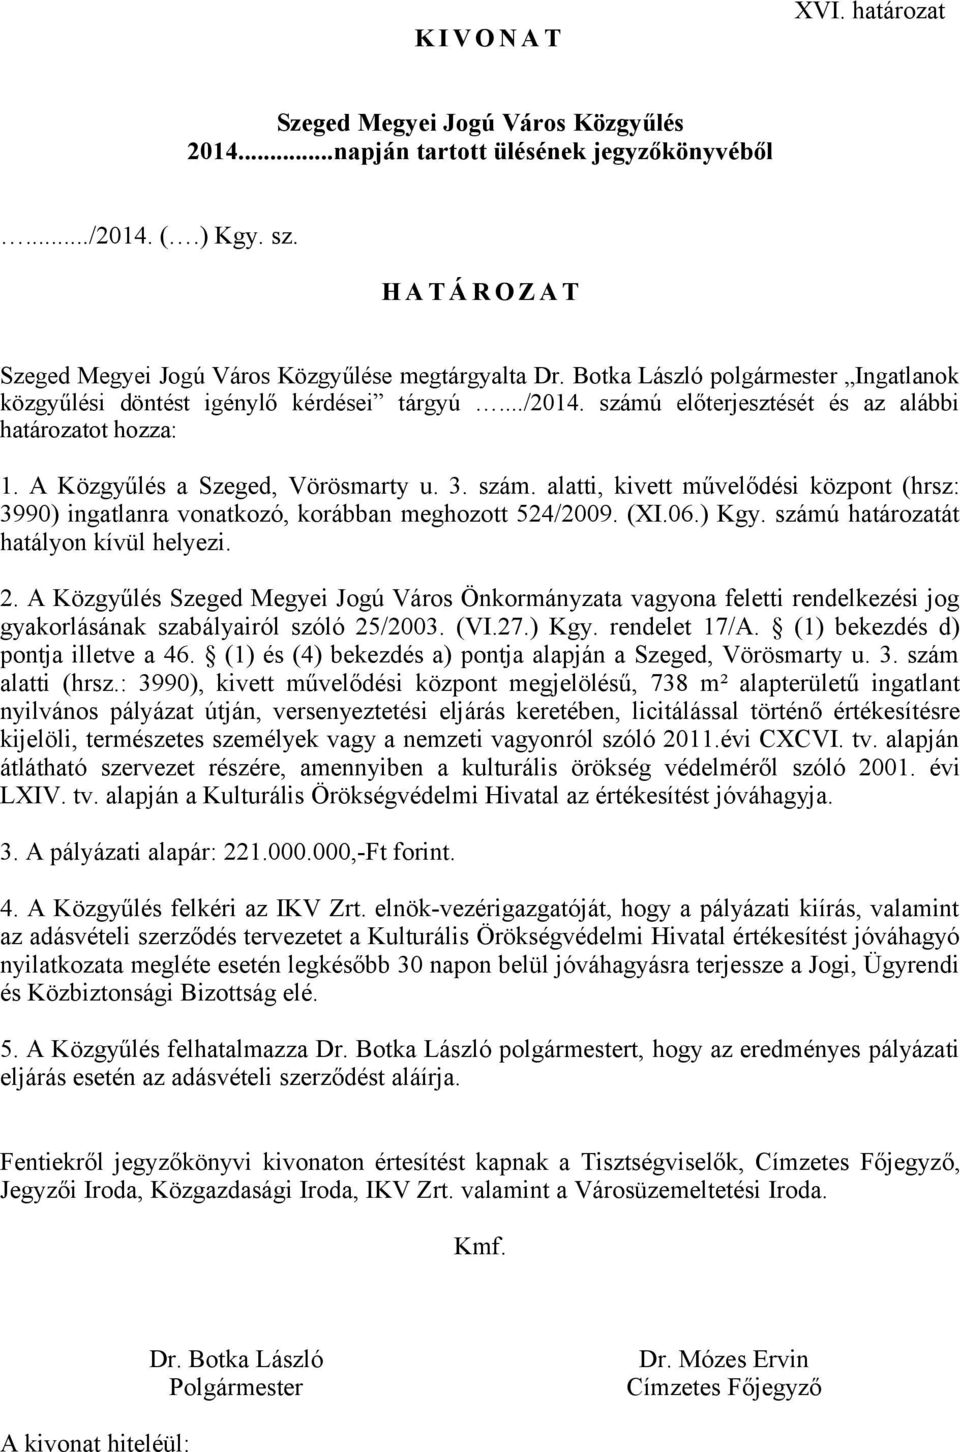 (XI.06.) Kgy. számú határozatát hatályon kívül helyezi. 2. A Közgyűlés Szeged Megyei Jogú Város Önkormányzata vagyona feletti rendelkezési jog gyakorlásának szabályairól szóló 25/2003. (VI.27.) Kgy. rendelet 17/A.